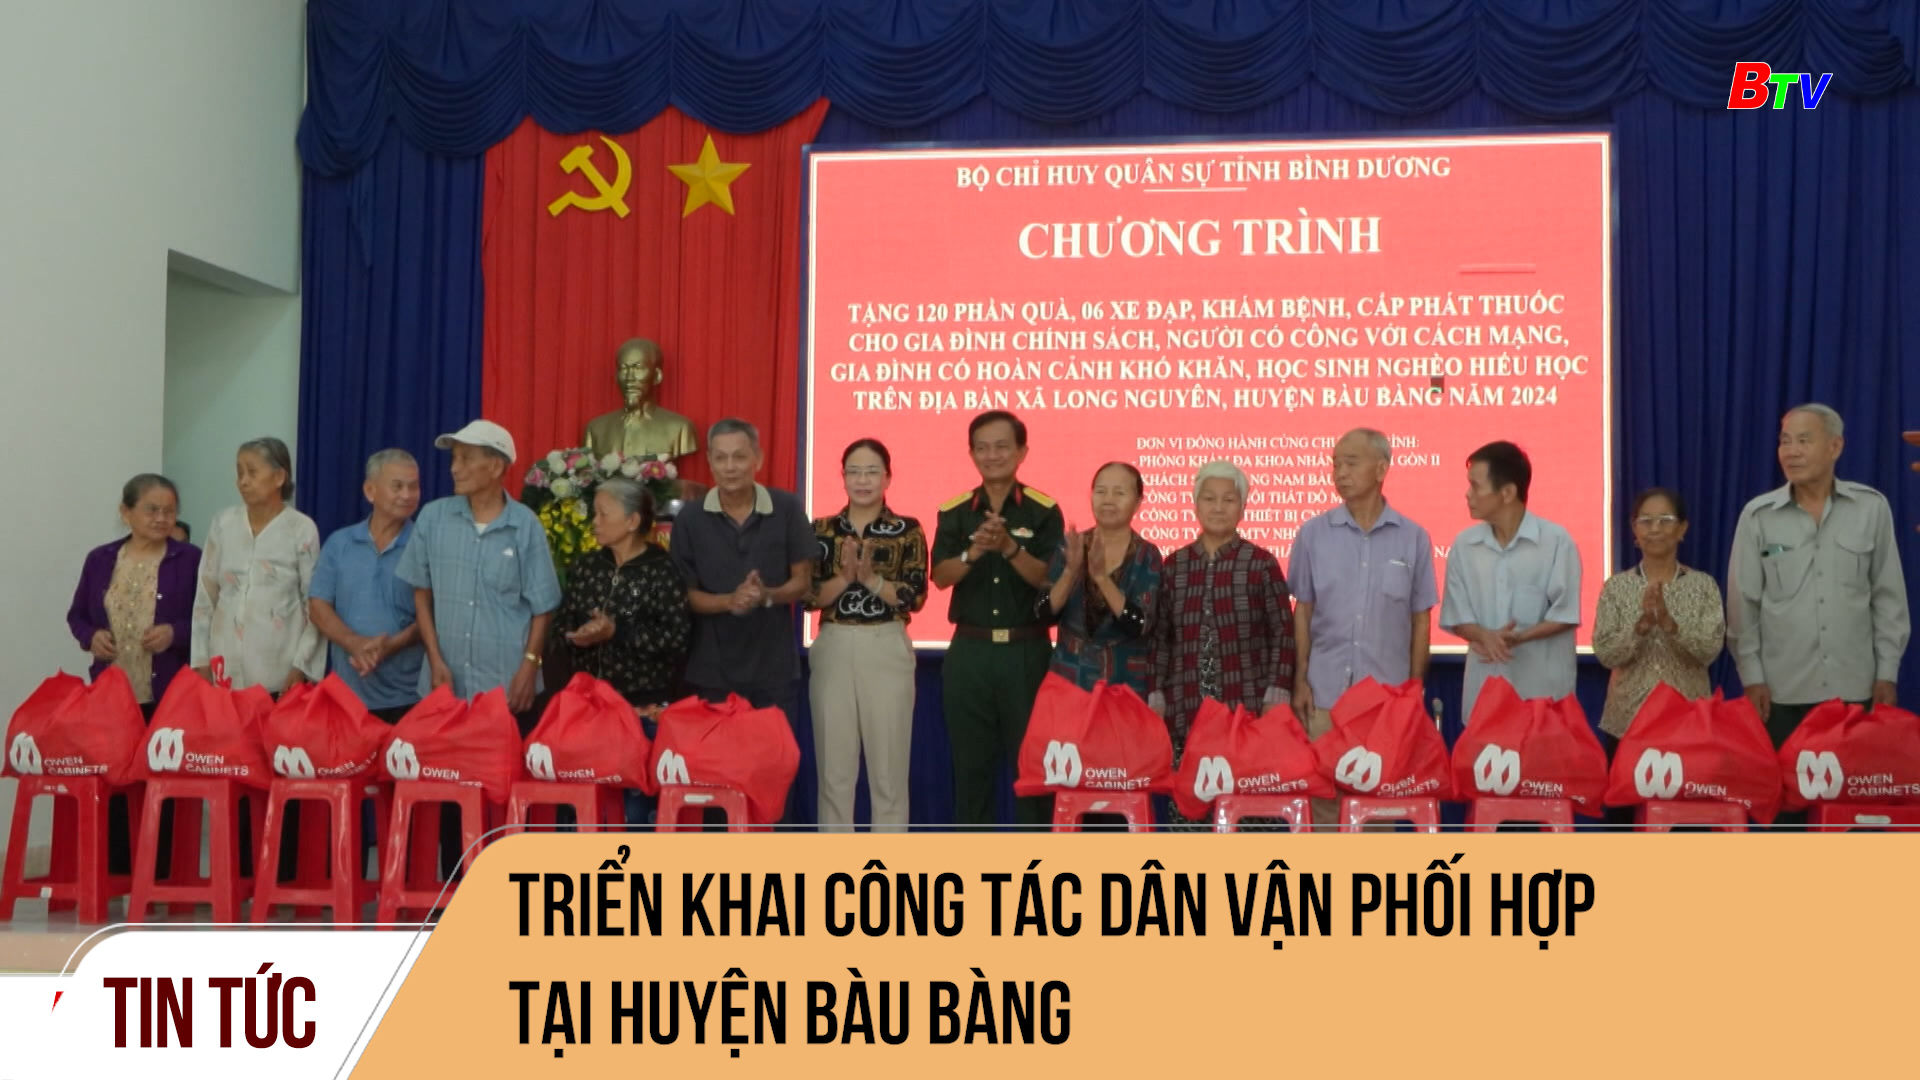 Triển khai công tác dân vận phối hợp tại huyện Bàu Bàng